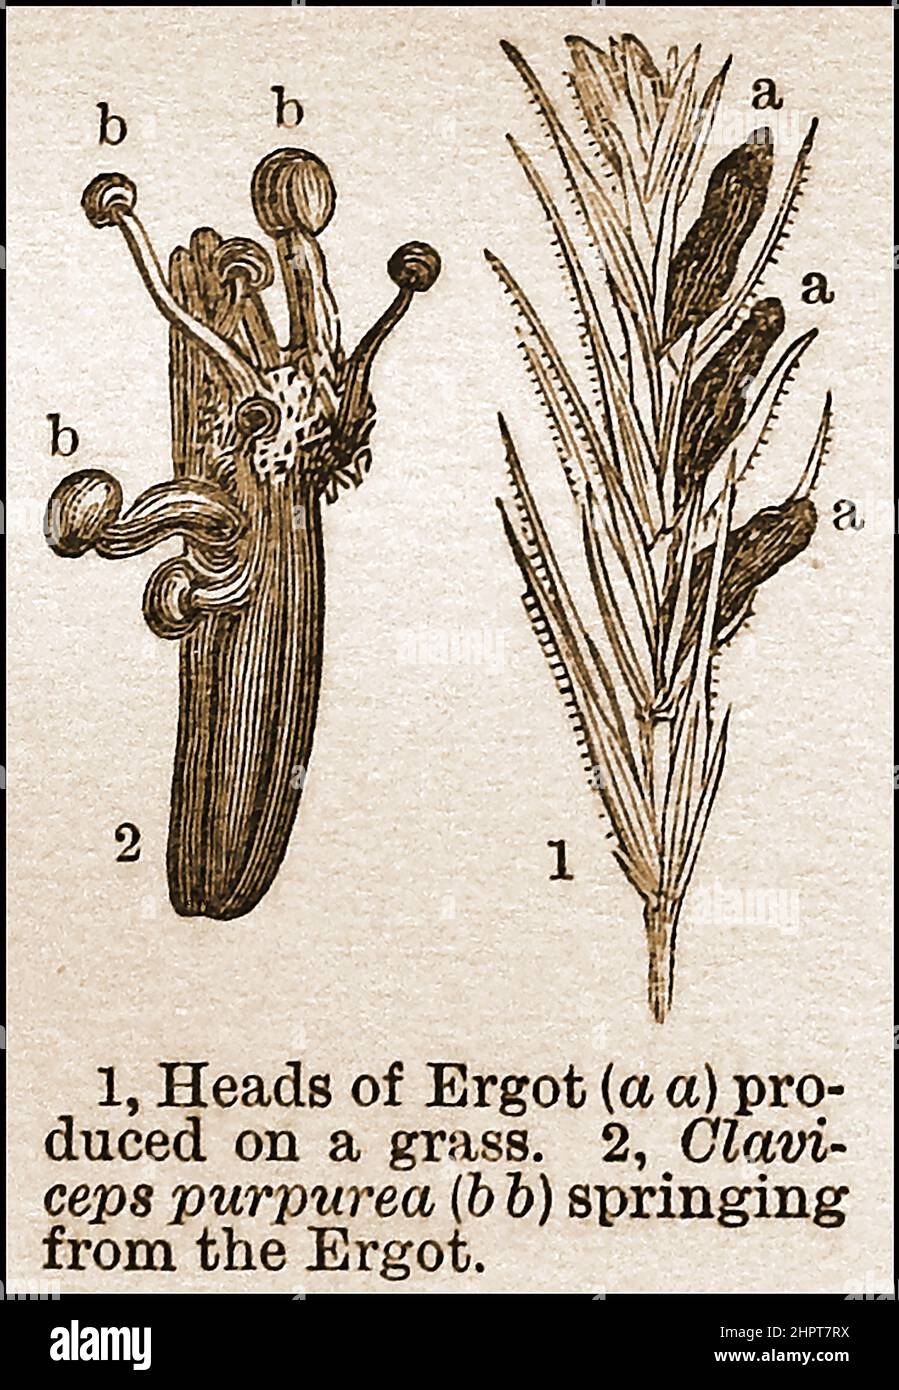 Une illustration de 19th siècle du champignon Ergot poussant sur l'herbe de seigle. Bien que essentiellement toxique, il a été largement utilisé dans les médicaments et pour synthétiser le médicament hallucinogène acide lysergique diéthylamide (LSD) Banque D'Images